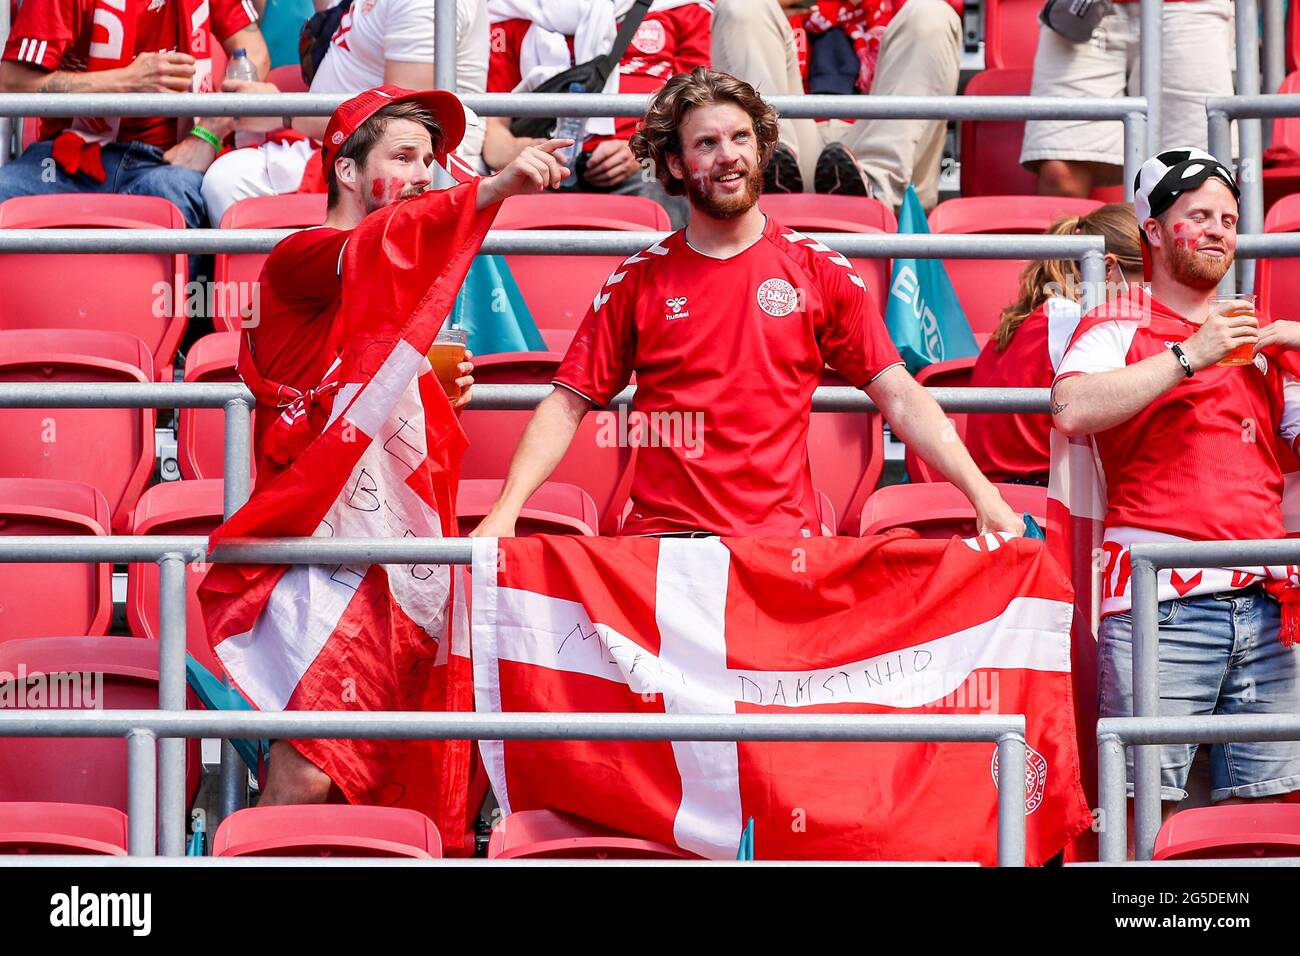 Tifosi della Danimarca durante la partita UEFA Euro 2020 del 16 che si tiene presso la Johan Cruijff Arena di Amsterdam, Paesi Bassi. Data immagine: Sabato 26 giugno 2021. Foto Stock